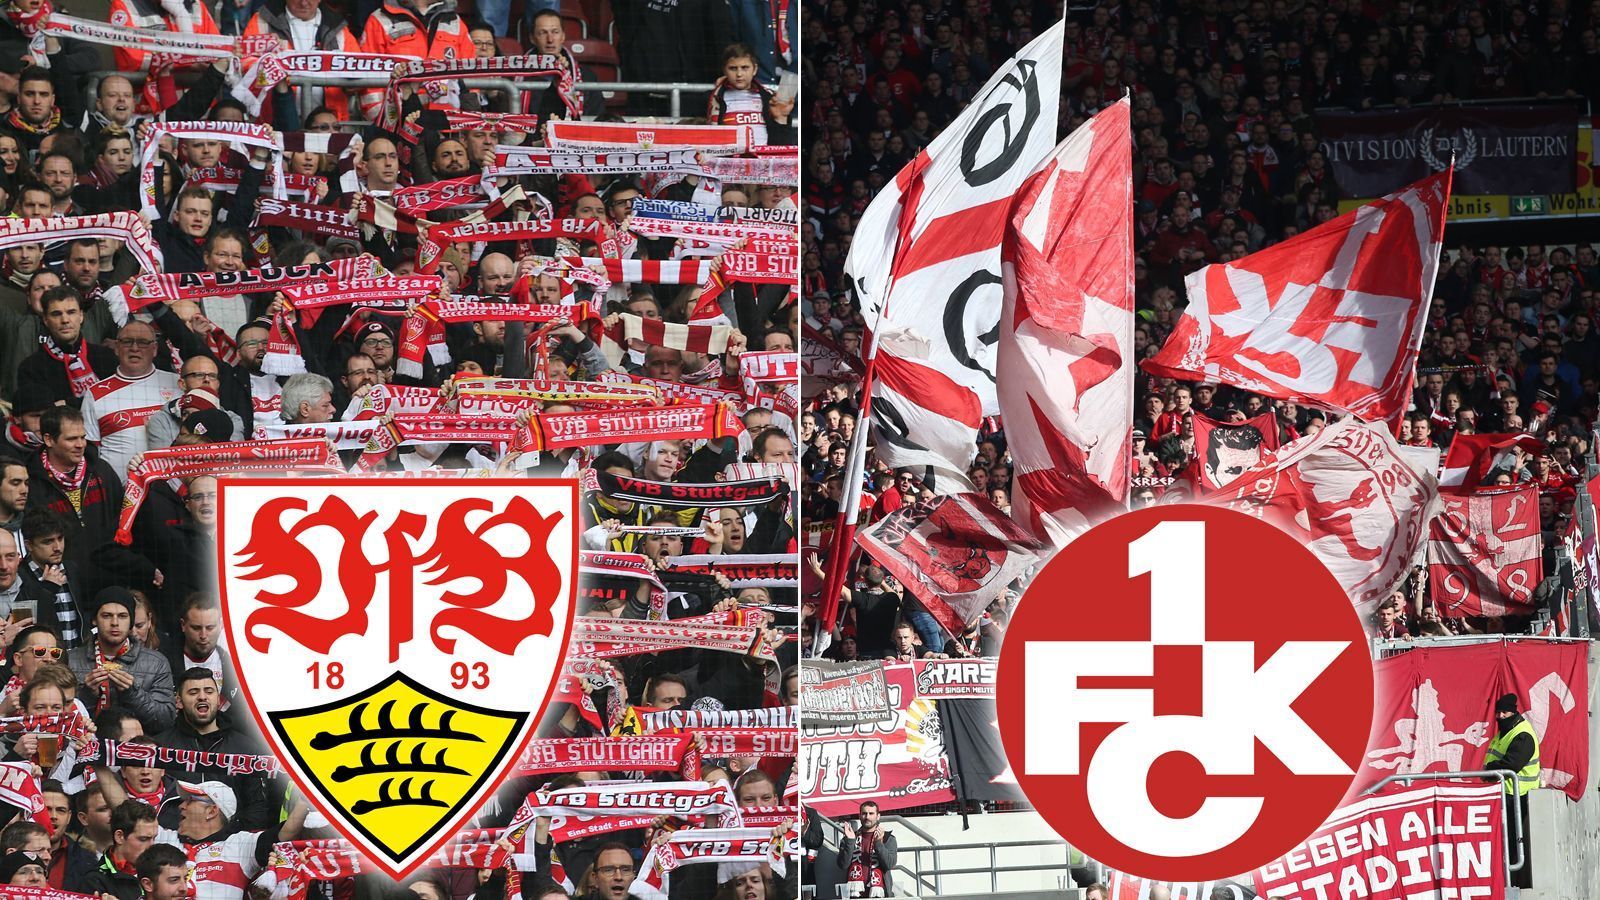 
                <strong>VfB Stuttgart & 1. FC Kaiserslautern</strong><br>
                Eine offizielle Bestätigung der Fanfreundschaft zwischen dem VfB Stuttgart und dem 1. FC Kaiserslautern hat es zwar nie gegeben. Aber eines verbindet die beiden Vereine tief im Herzen: und zwar der gemeinsame Feind. In diesem Falle ist dies wohl der Karlsruher SC. Aus dieser Situation heraus ist eine grundsätzliche Sympathie zwischen den Fanlagern der roten Teufel und des VfB Stuttgart entstanden.
              